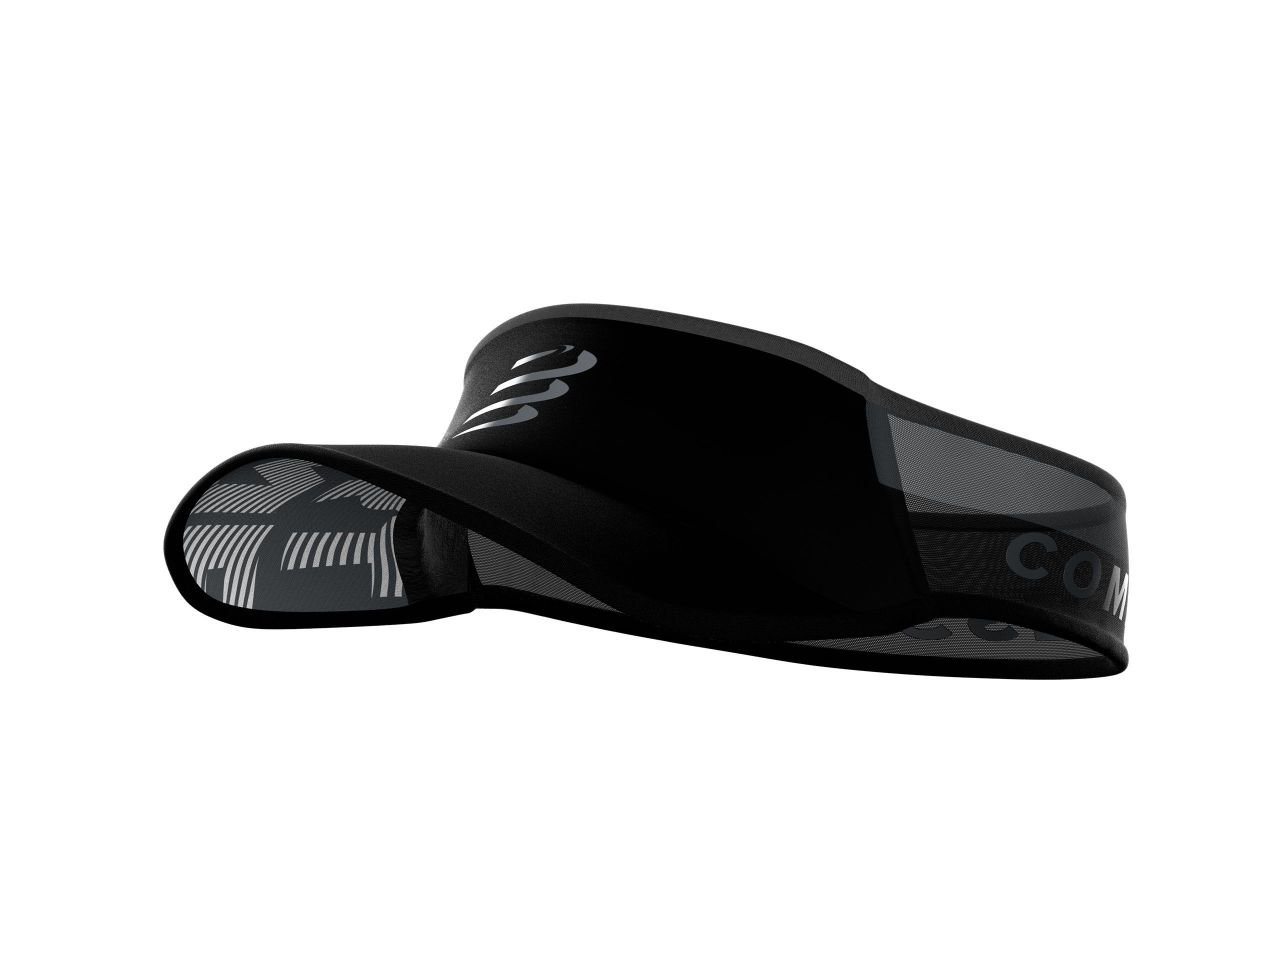 Ultralight Vizör - Siyah-Flaş |Compressport